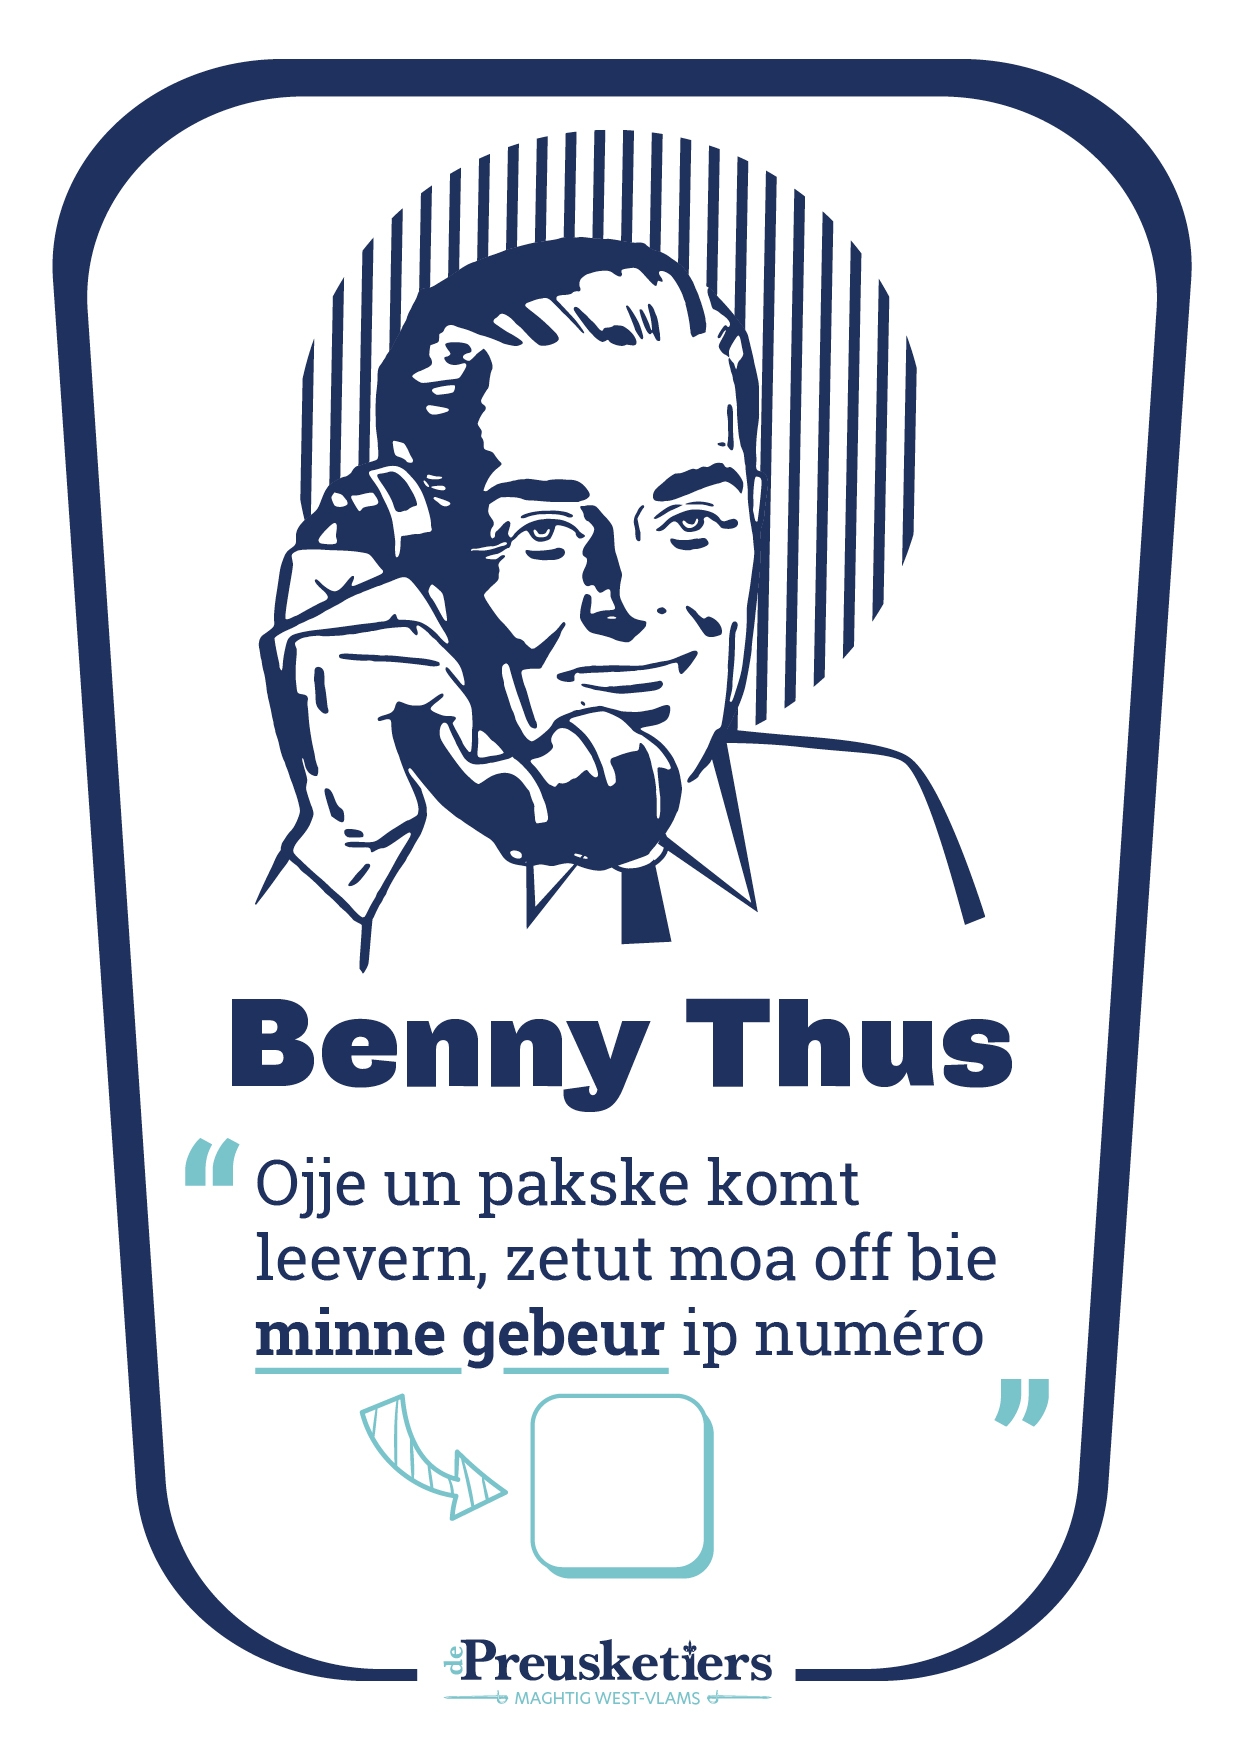 Affiche Benny Thus - De Preusketiers